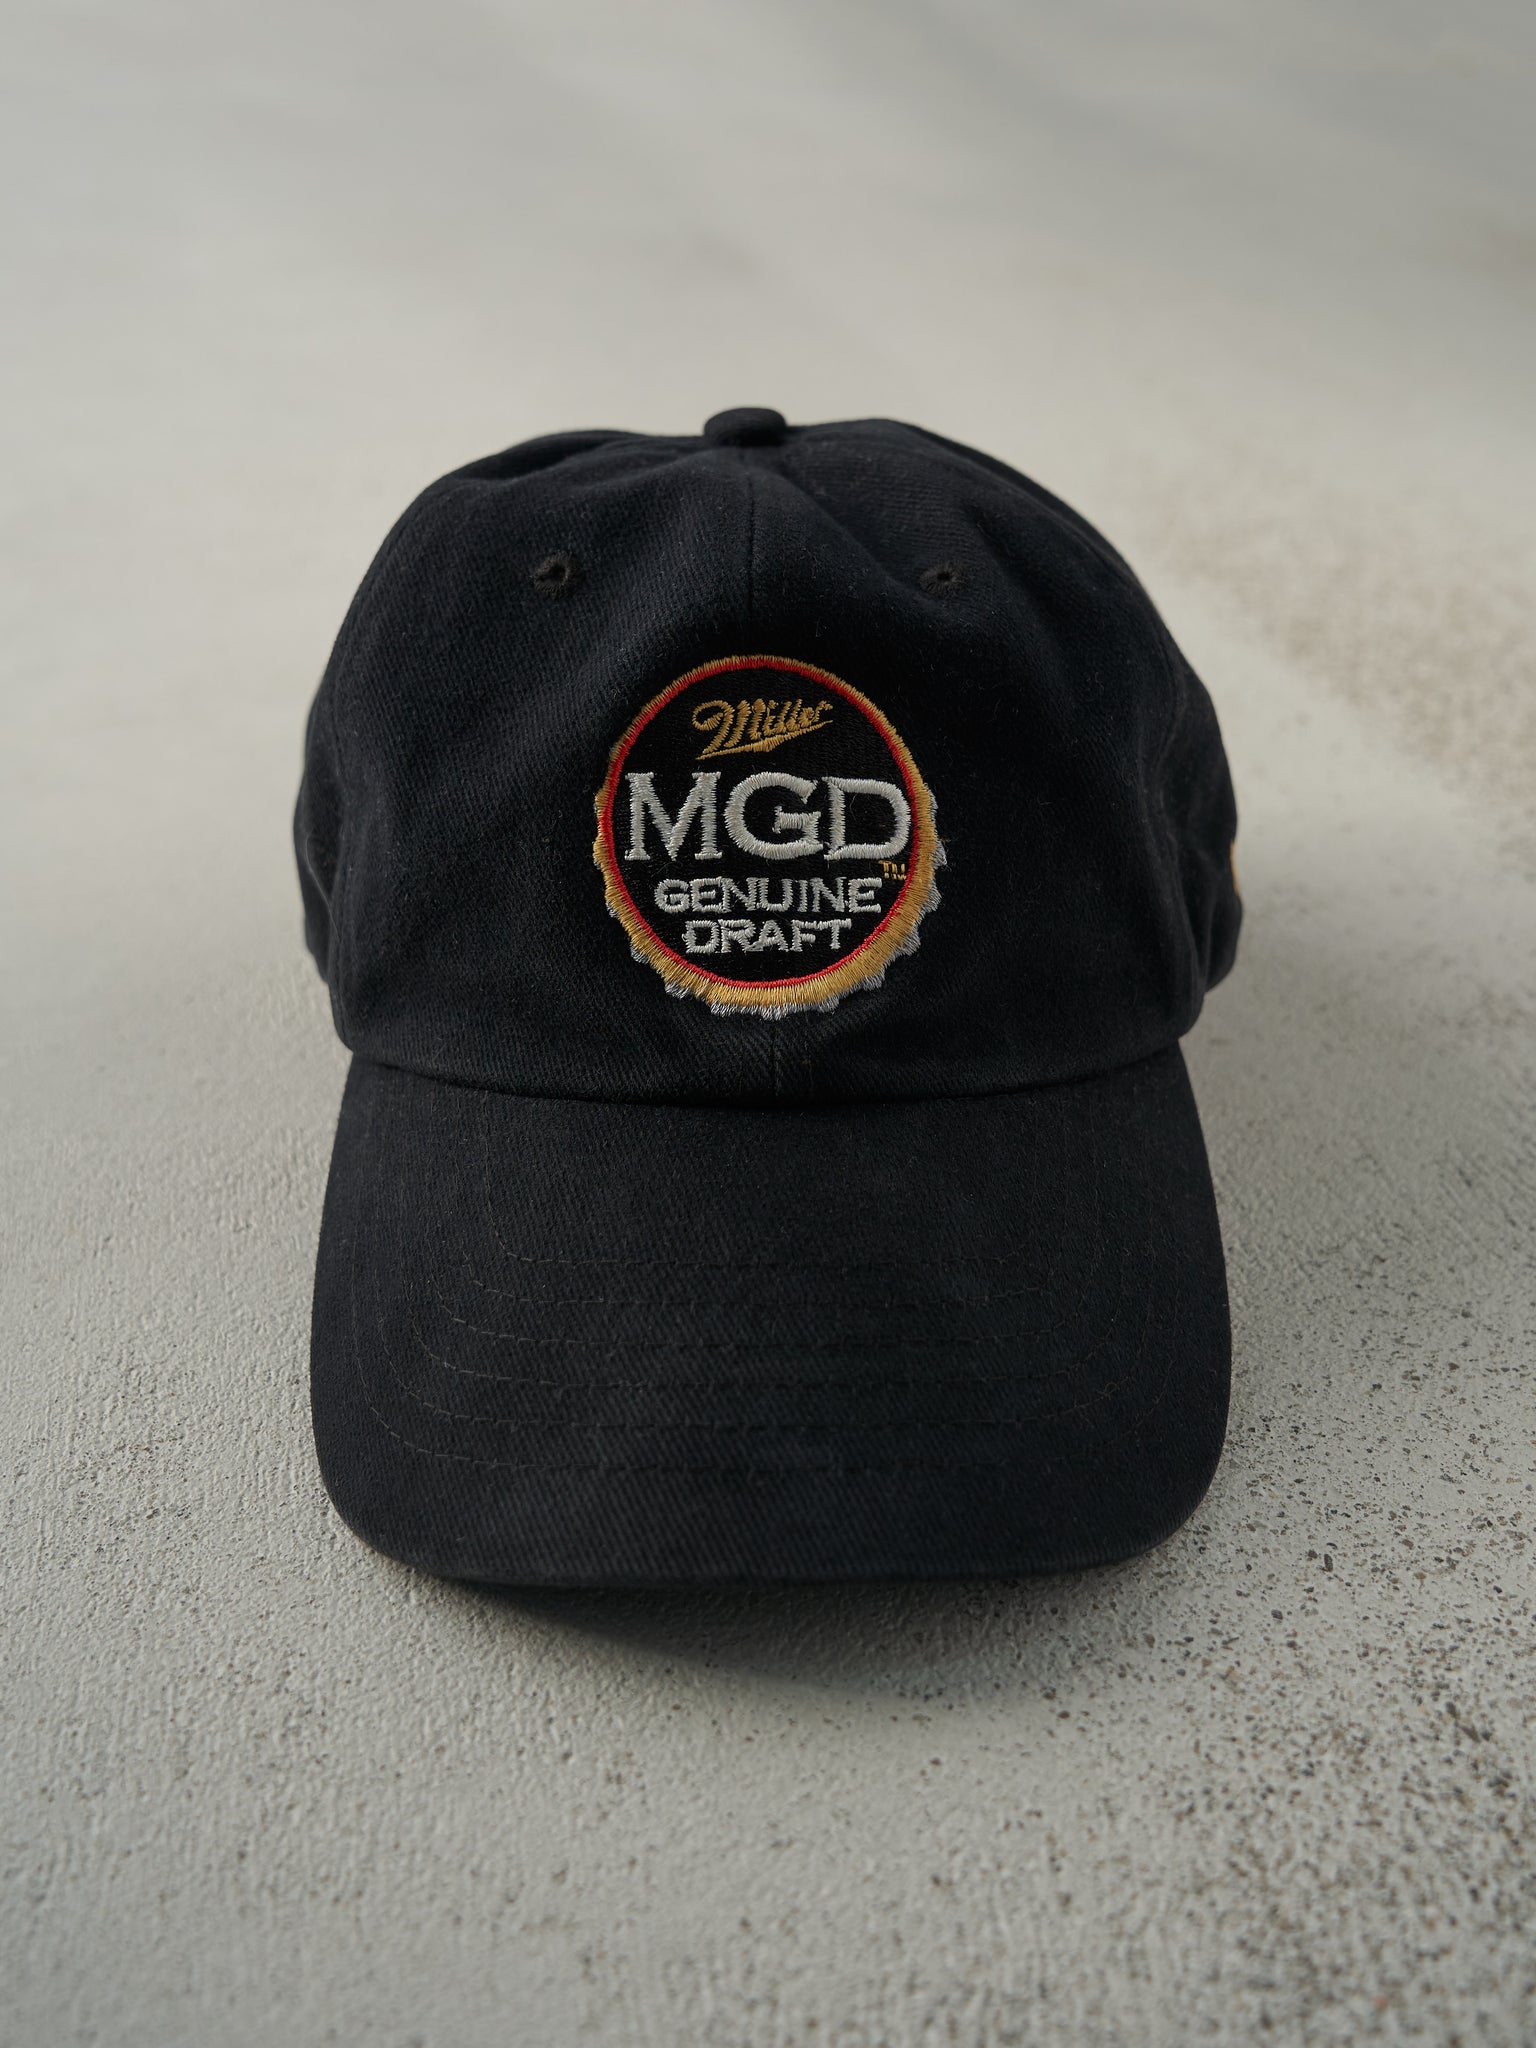 Vintage 90s Black Miller Genuine Draft Embroidered Strap Back Hat